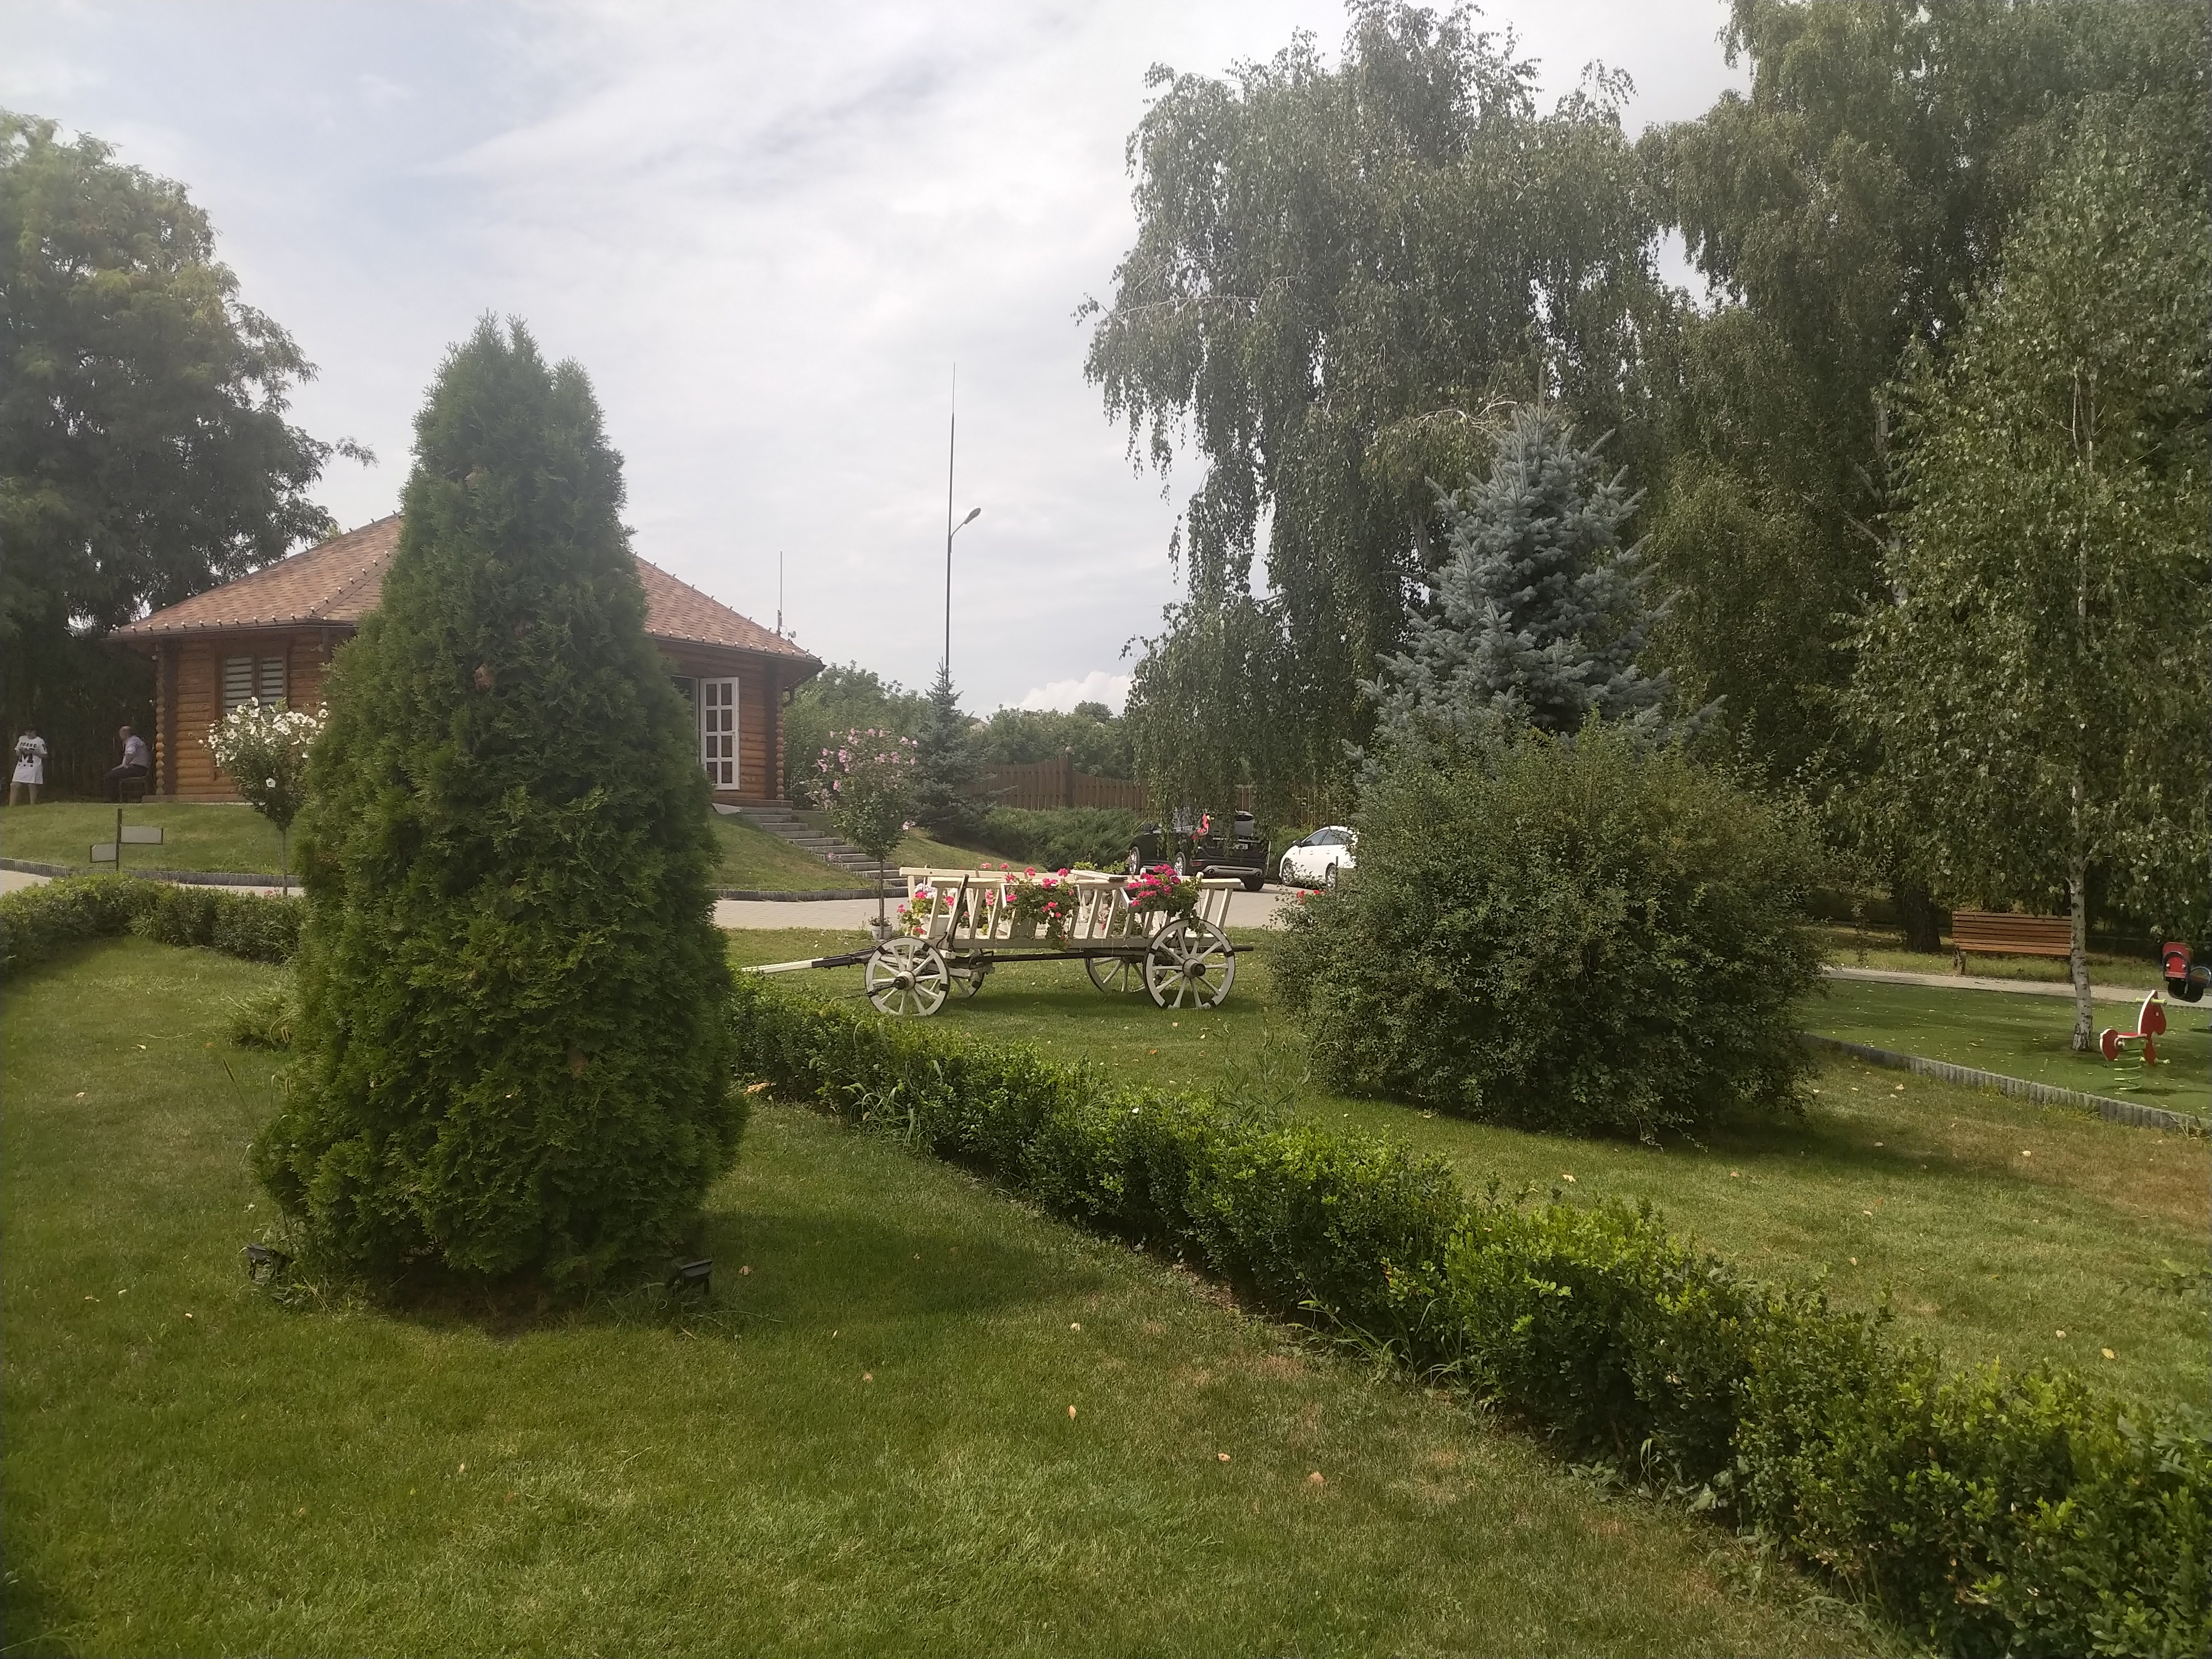 MD, Район Criuleni, Satul Magdacesti, Căruță decorativă la International Park